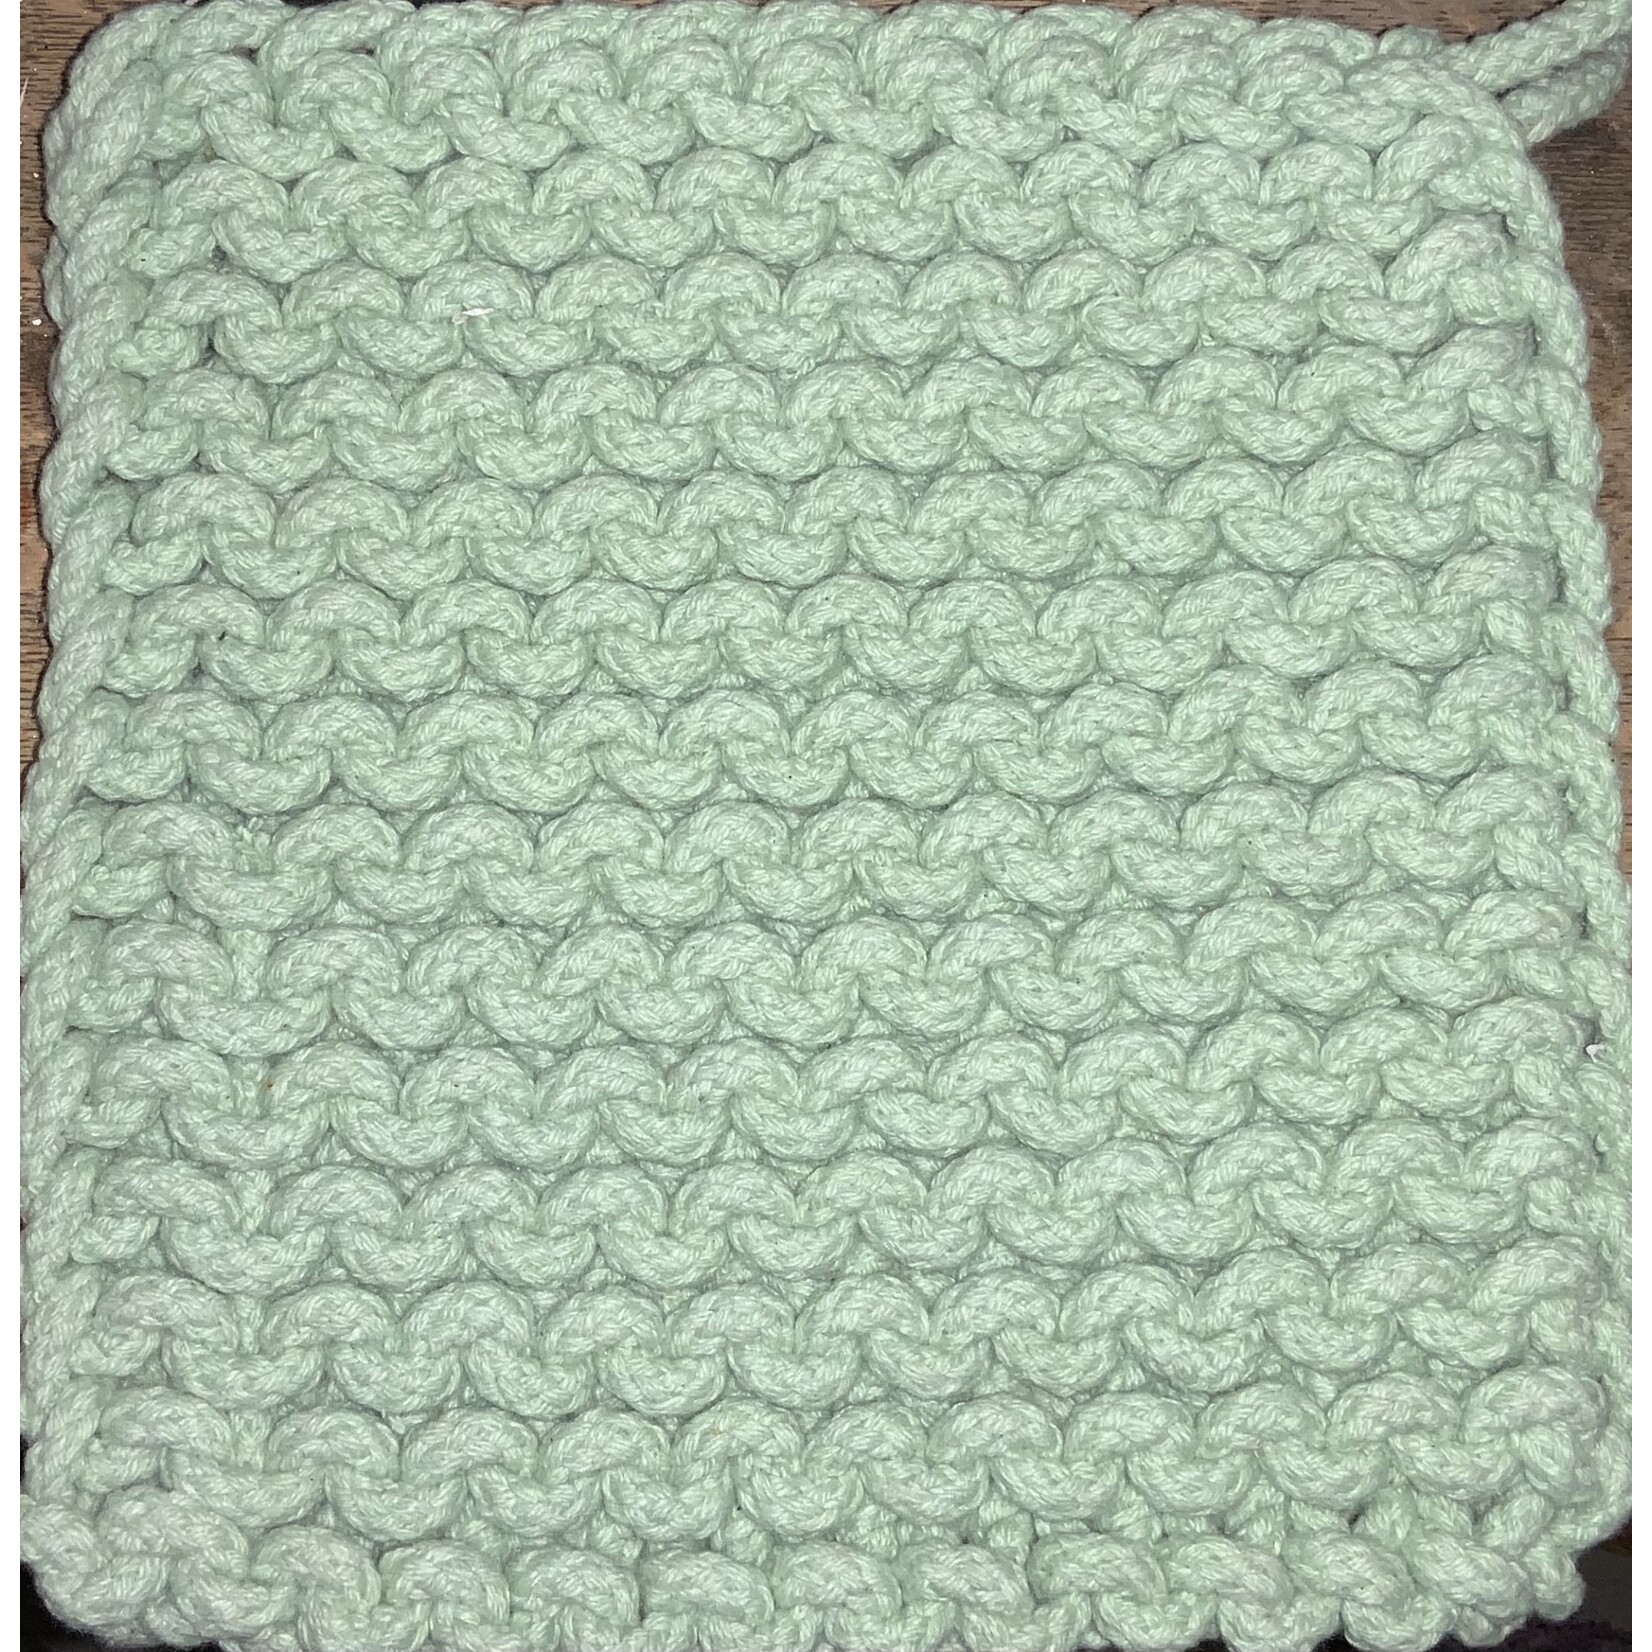 Creative Co-op 8” Square Crochet Cotton Potholder